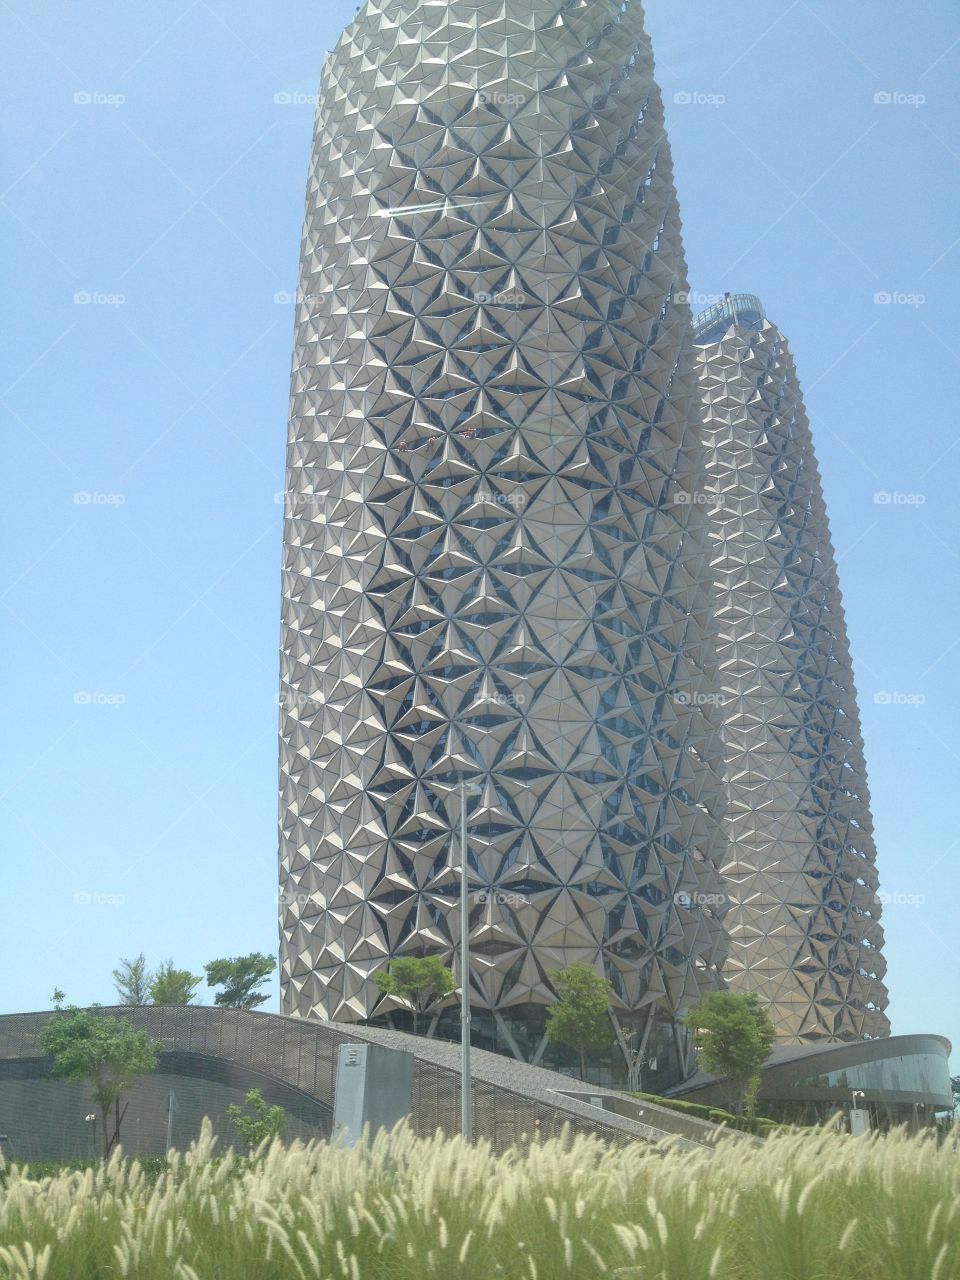 Buildings in Abu Dhabi